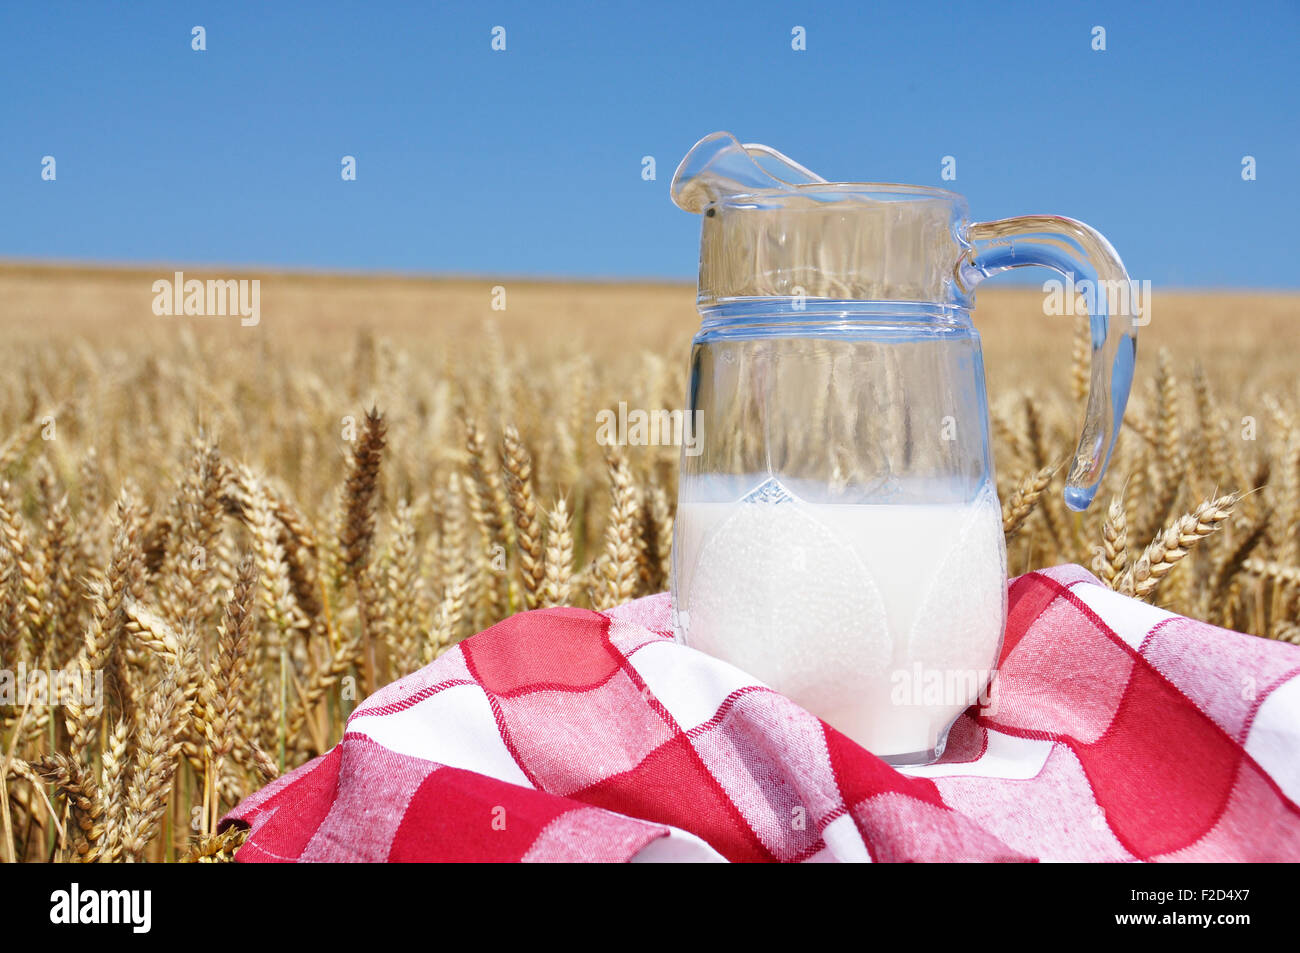 Pichet de lait contre champ de blé Banque D'Images